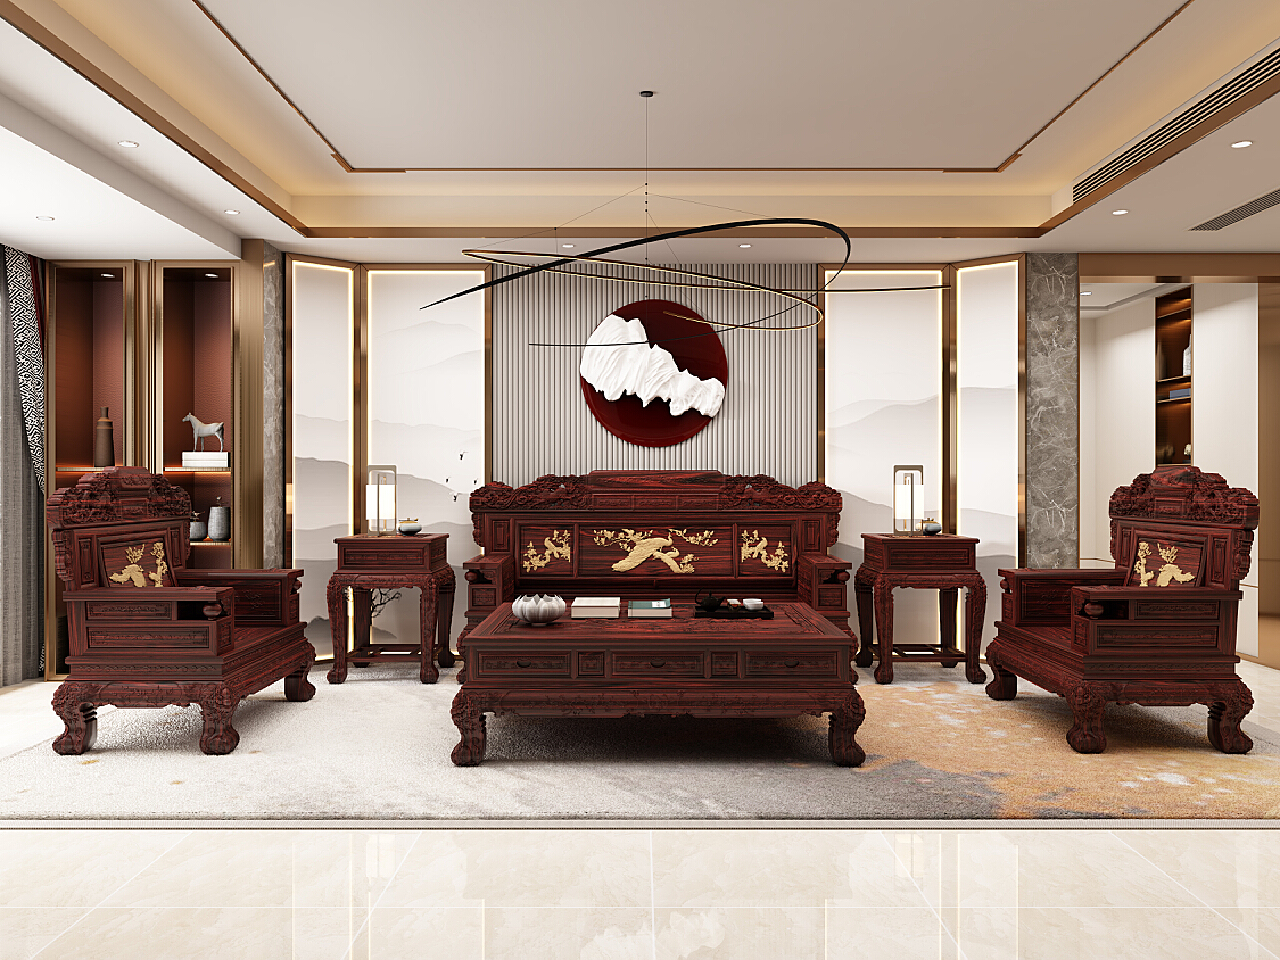 中式红木家具效果图 – 设计本装修效果图